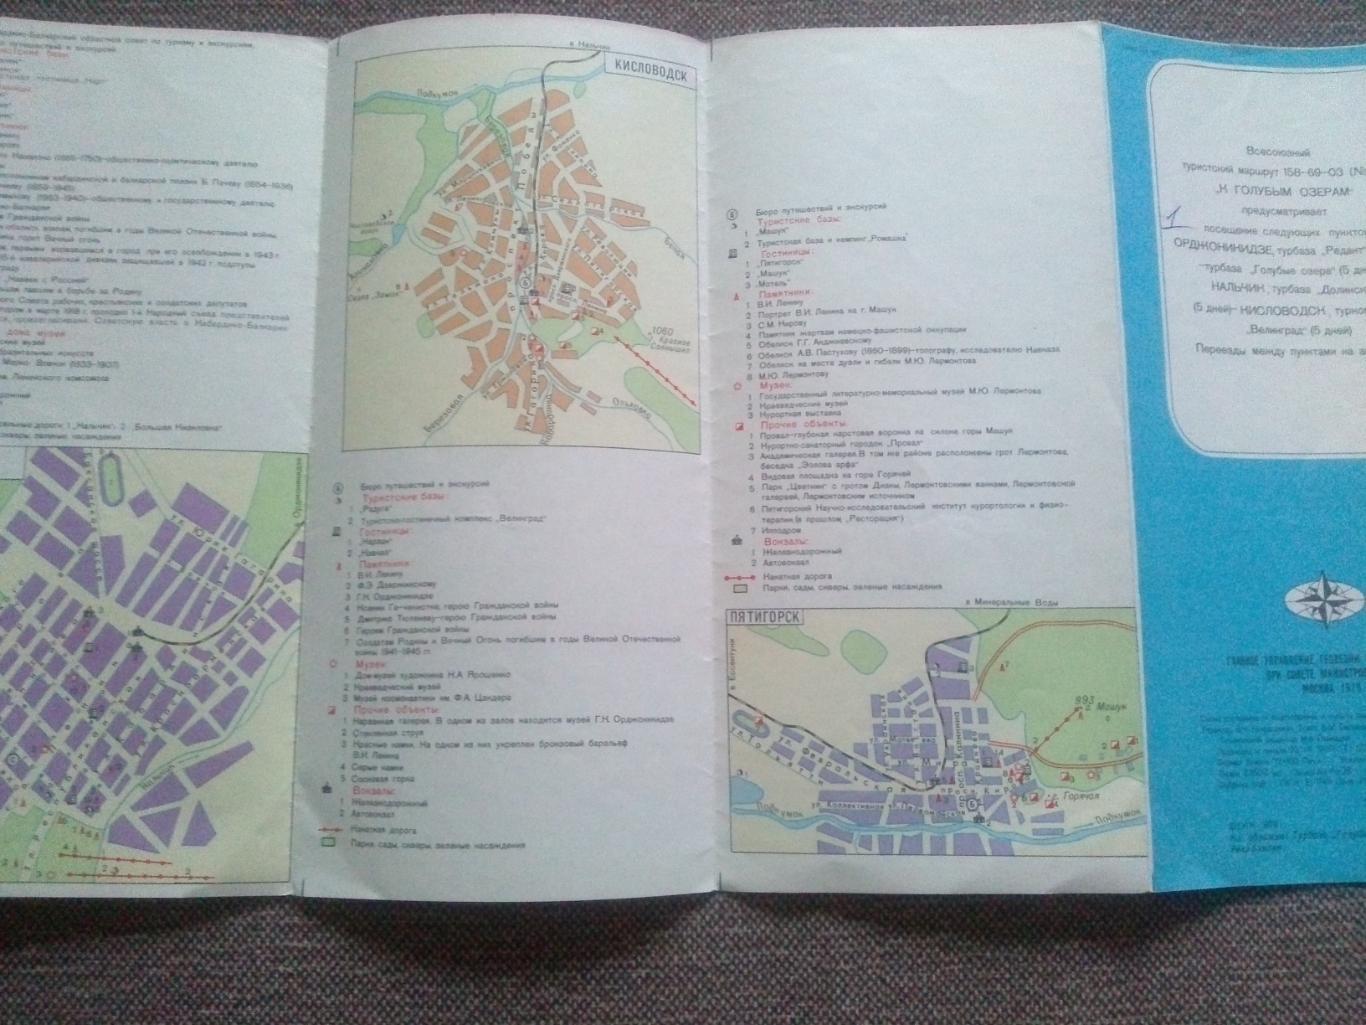 Карта (туристская схема) : К Голубым озерам 1979 г. (Орджоникидзе Нальчик Кавказ 7